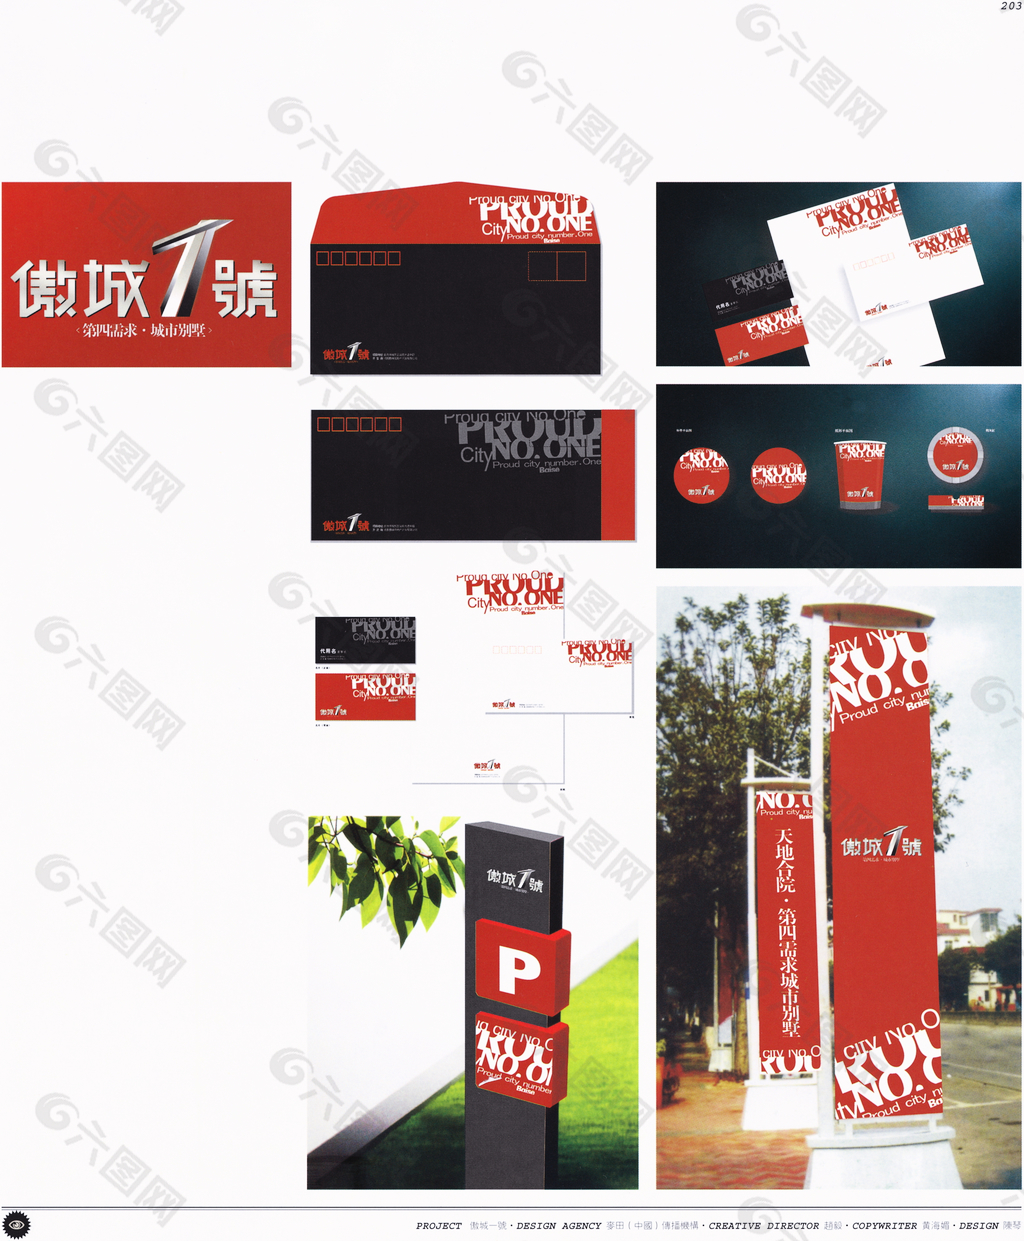 中国房地产广告年鉴 第二册 创意设计_0198